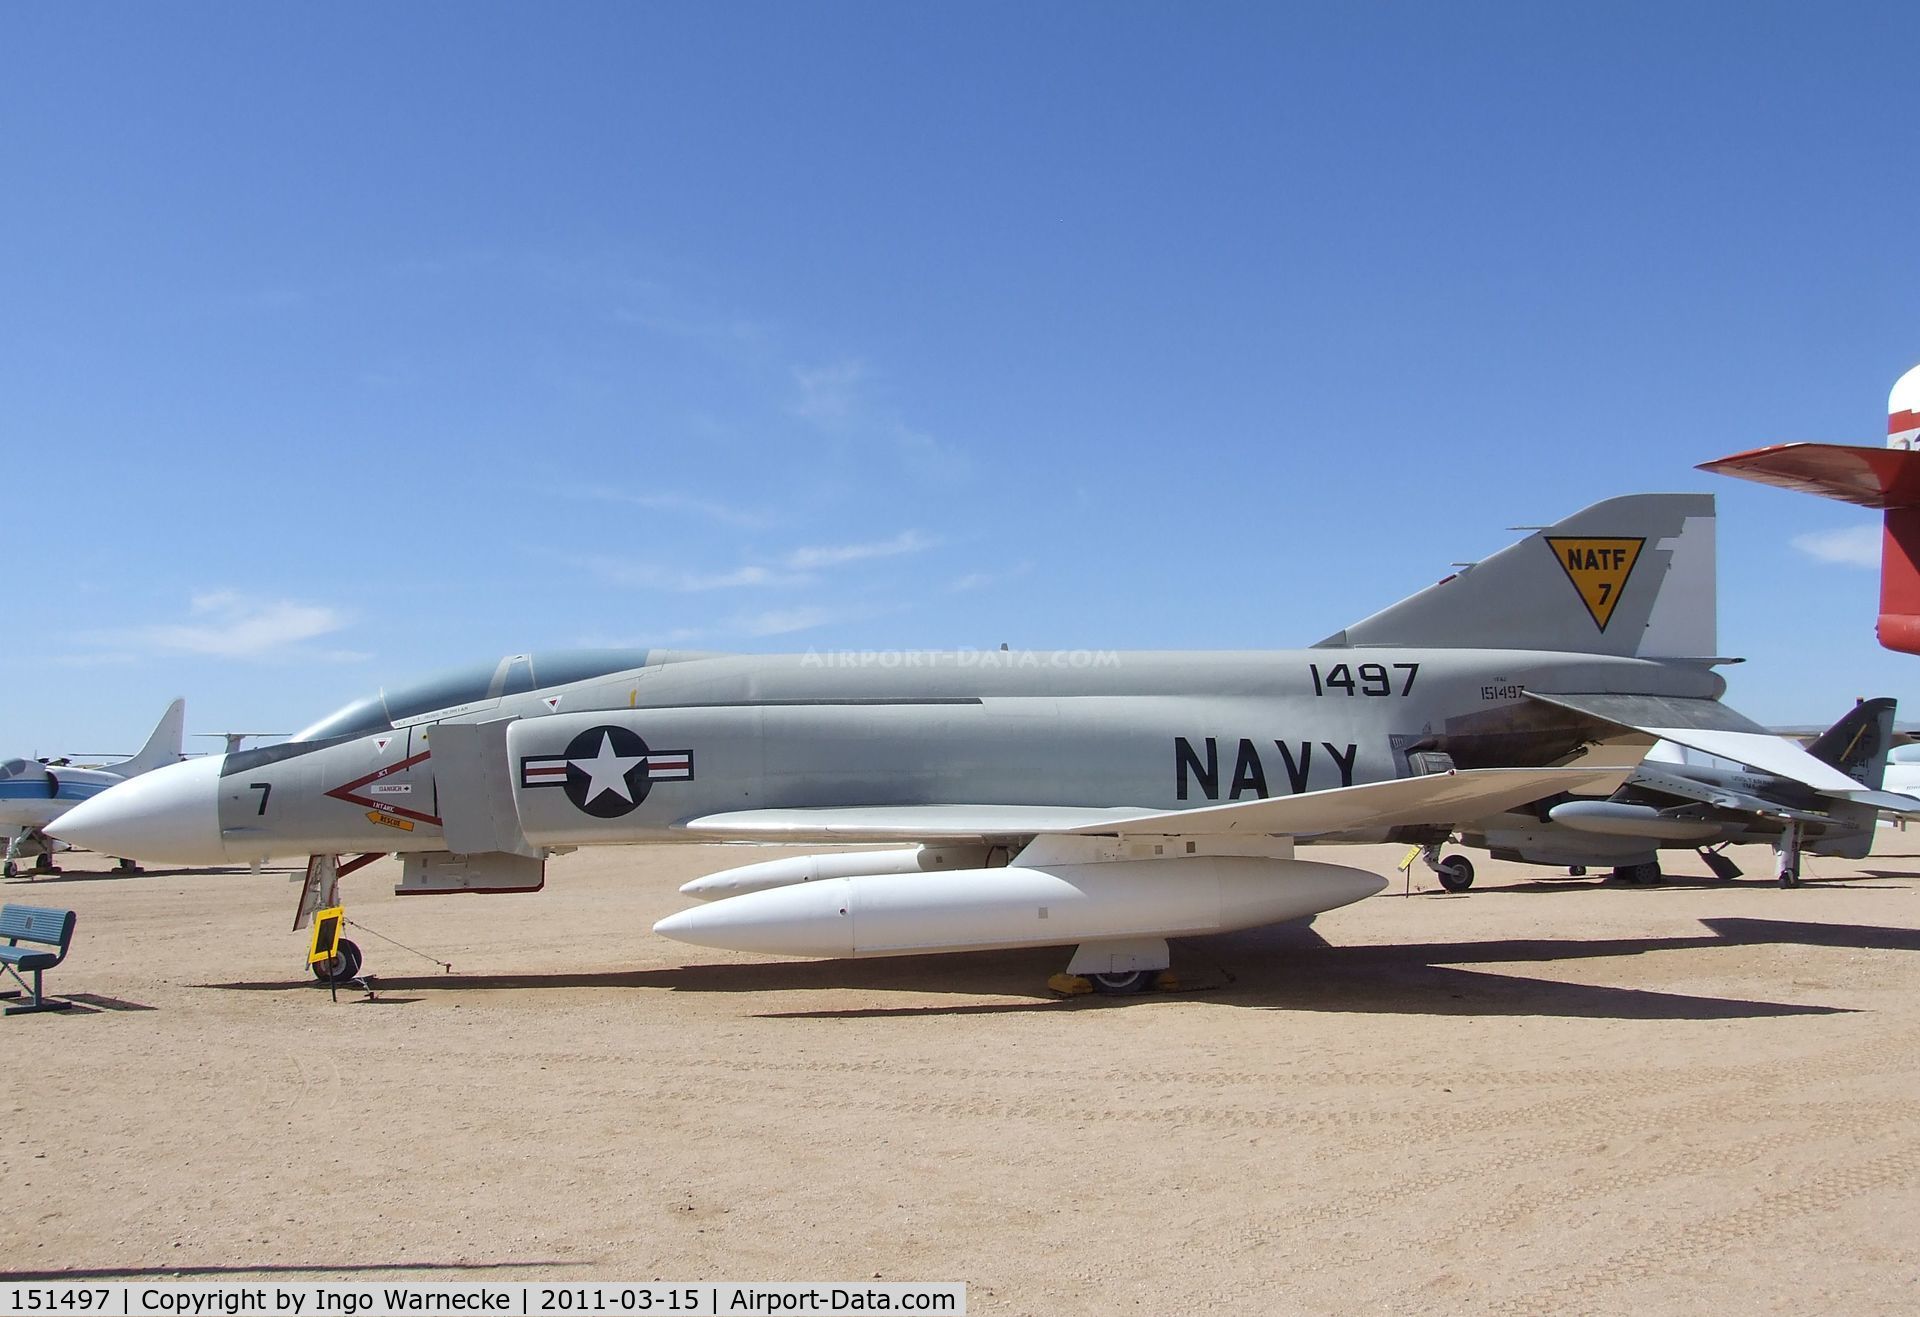 151497, 1964 McDonnell YF-4J Phantom II C/N 655, McDonnell Douglas YF-4J Phantom II at the Pima Air & Space Museum, Tucson AZ